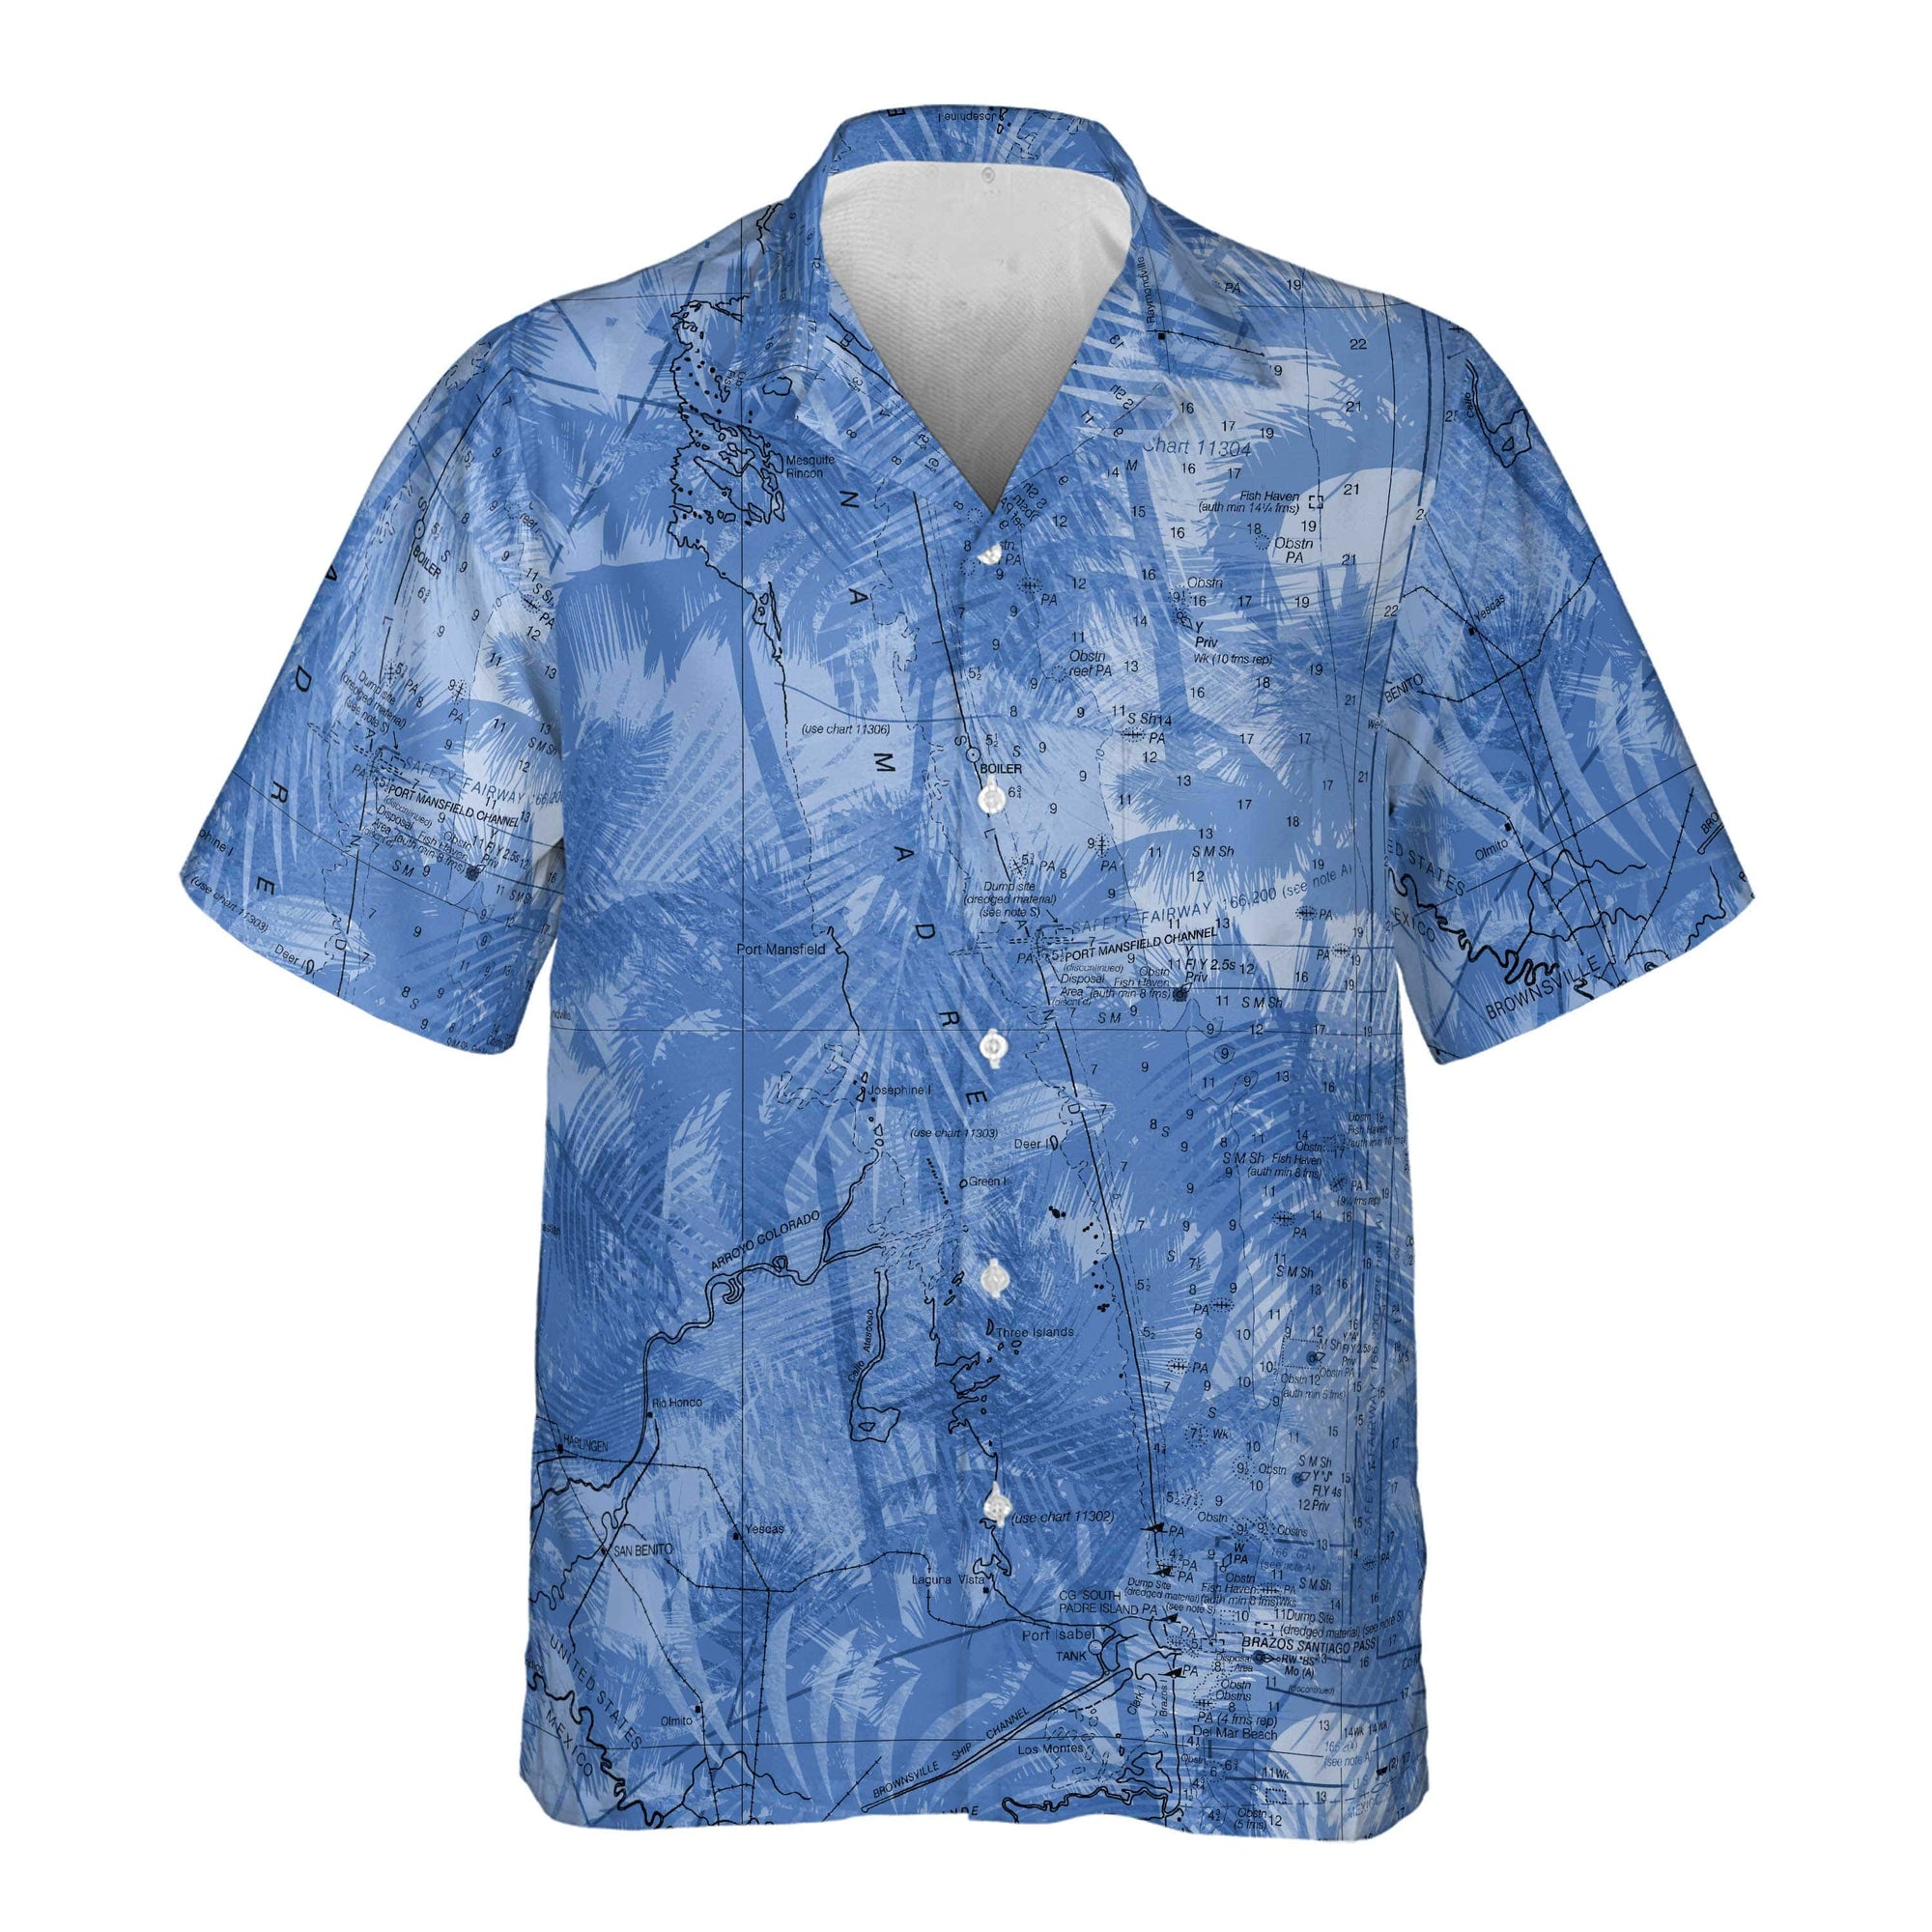 New York Rangers NHL Hawaiian Shirt Custom Parasols Aloha Shirt - Trendy  Aloha